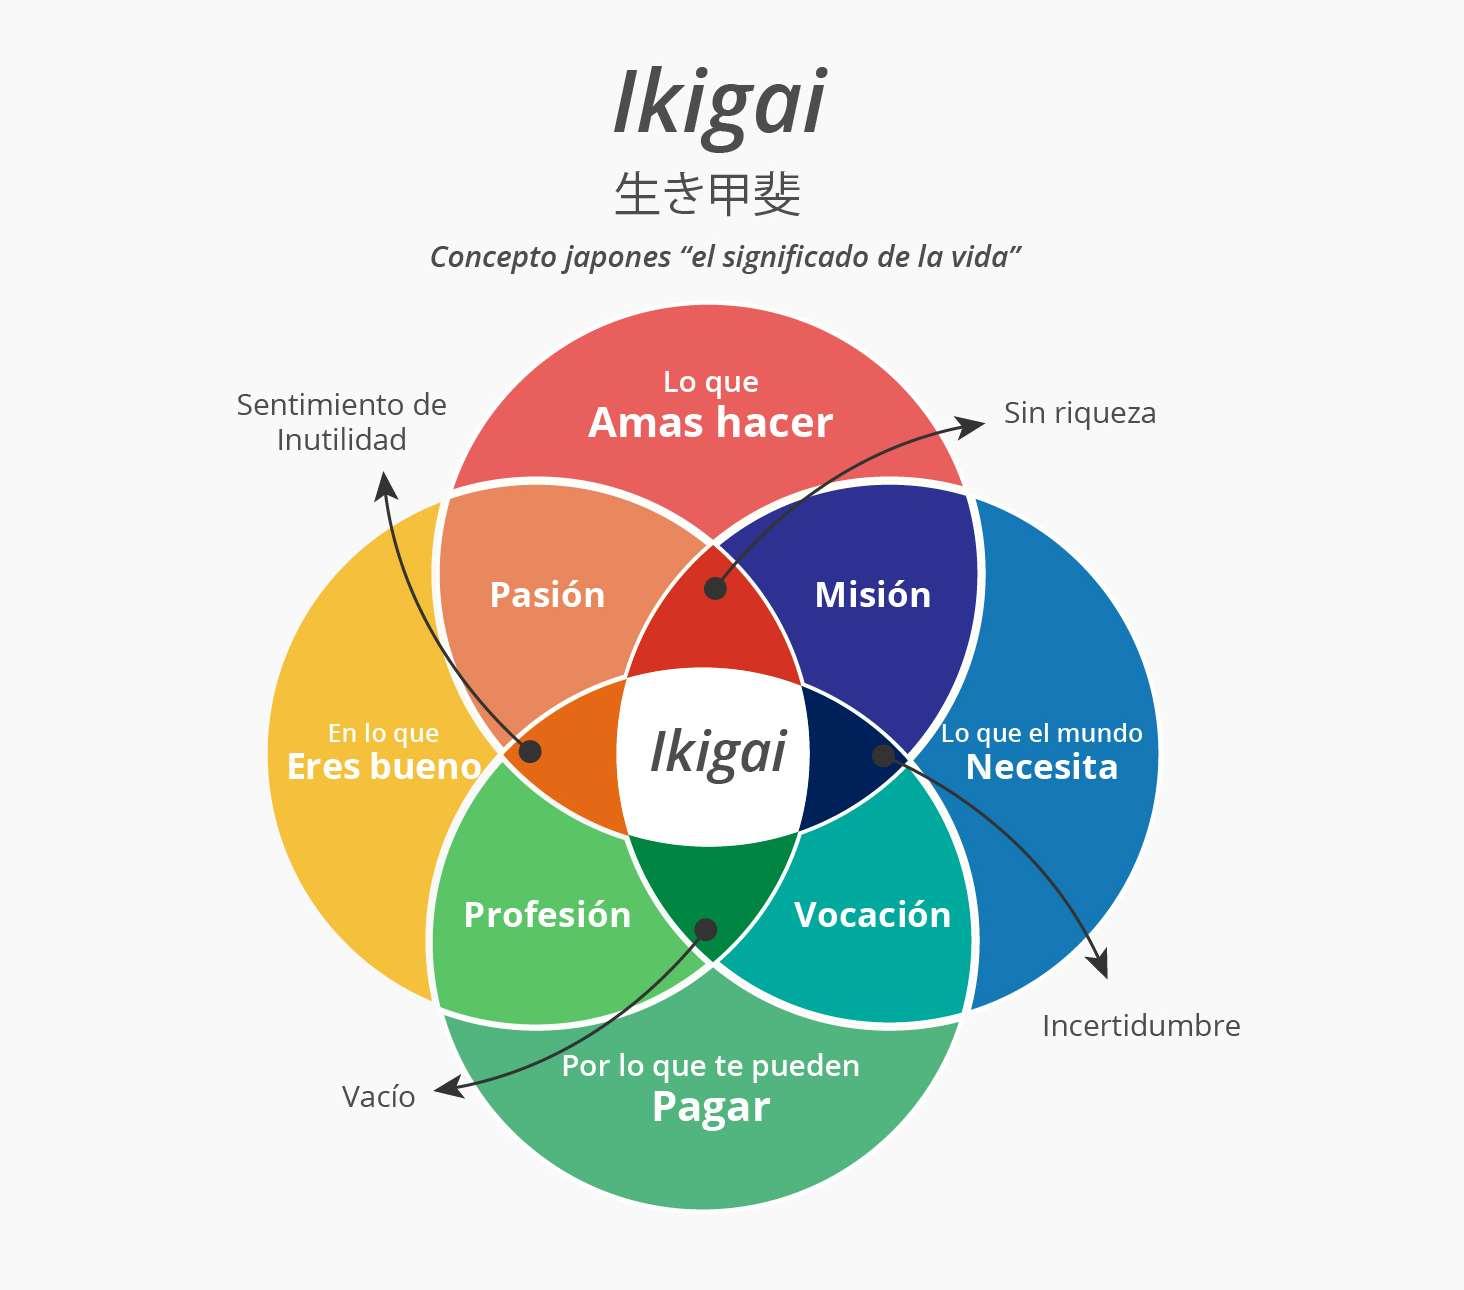 Fuente y más información: “Ikigai: Los secretos de Japón para una vida larga y feliz” (Francesc Miralles. Editorial: Urano, 2016)